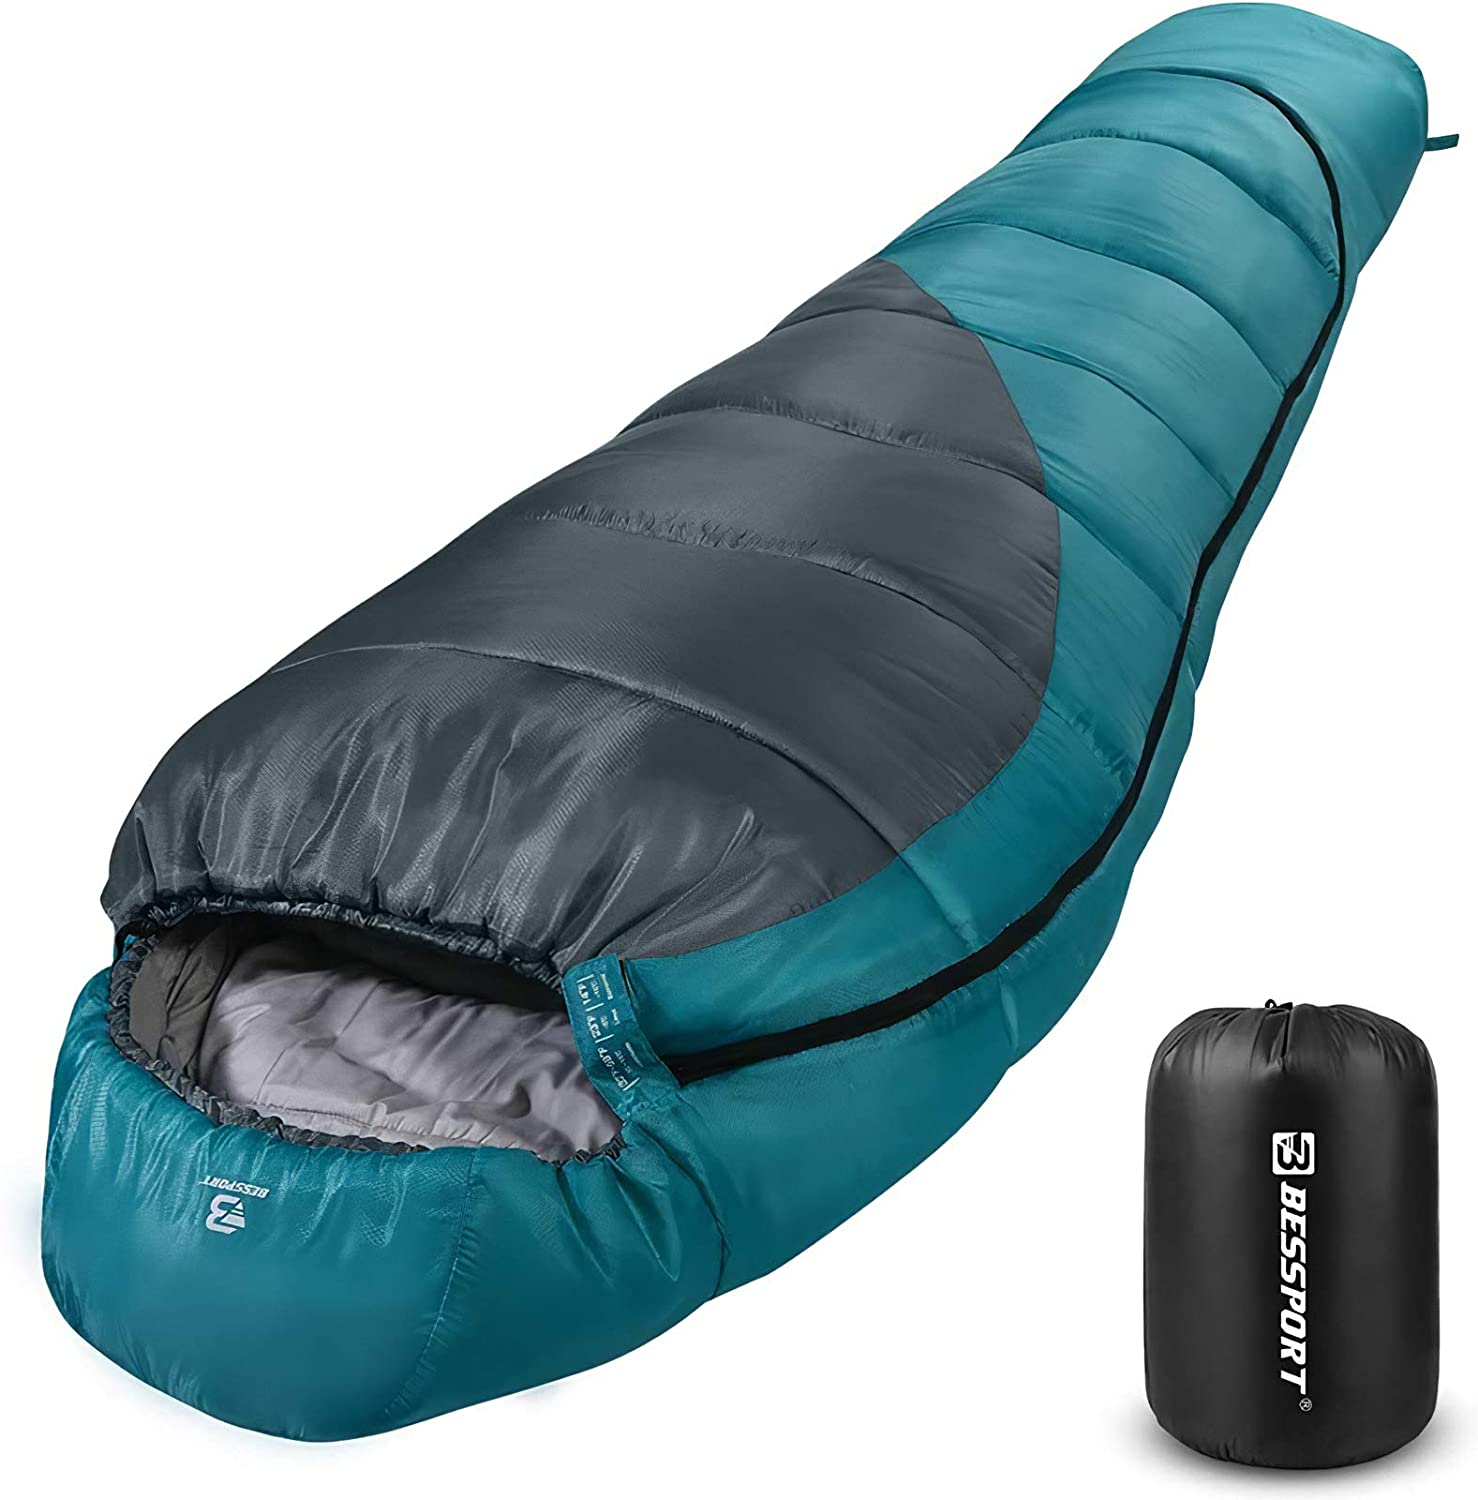 High Peak saco de dormir momia Pak 600 210x75cm gris oscuro/Azul camping saco de dormir